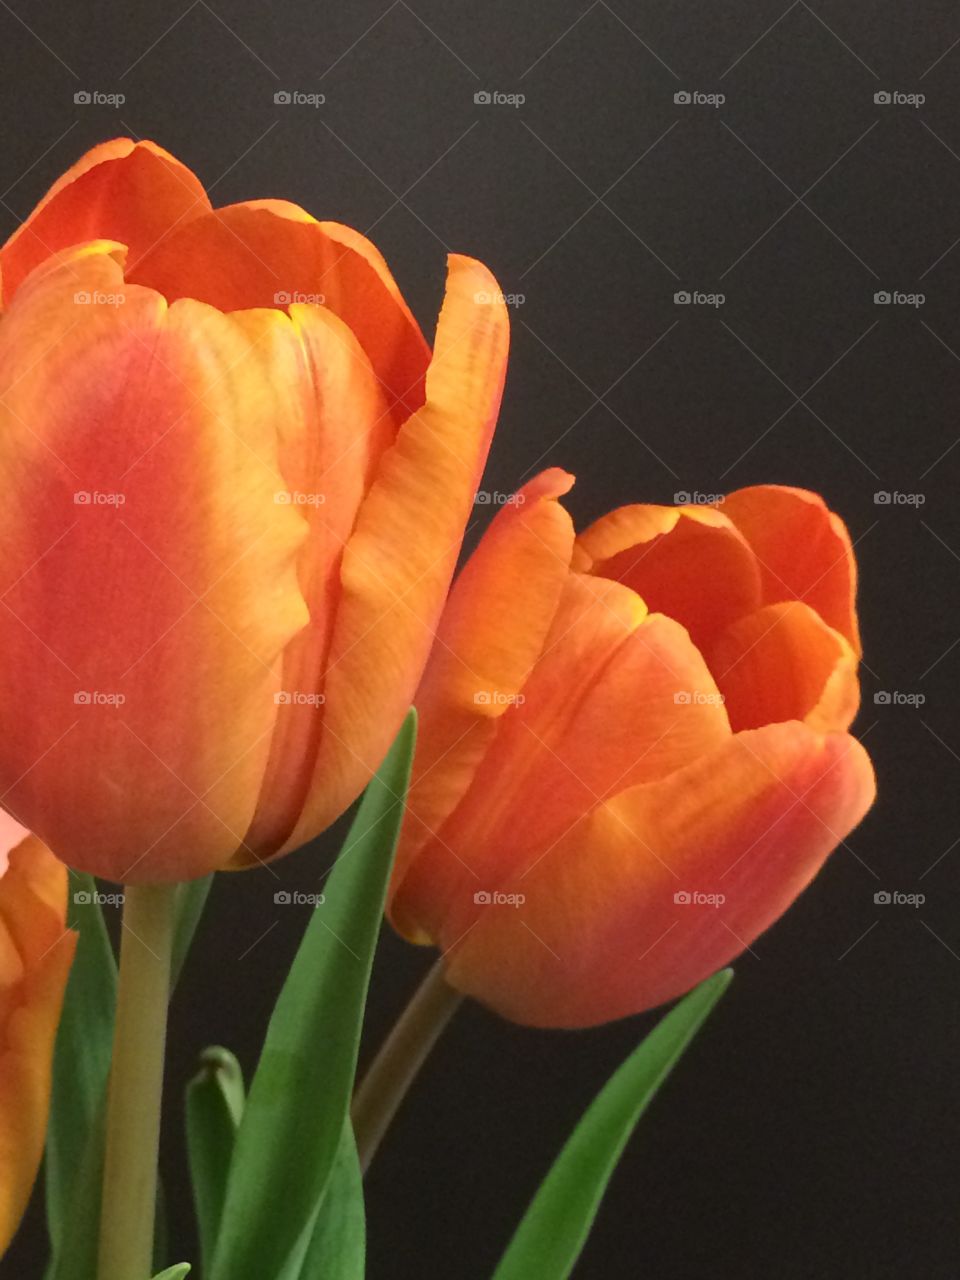 Orange tulips on the black background